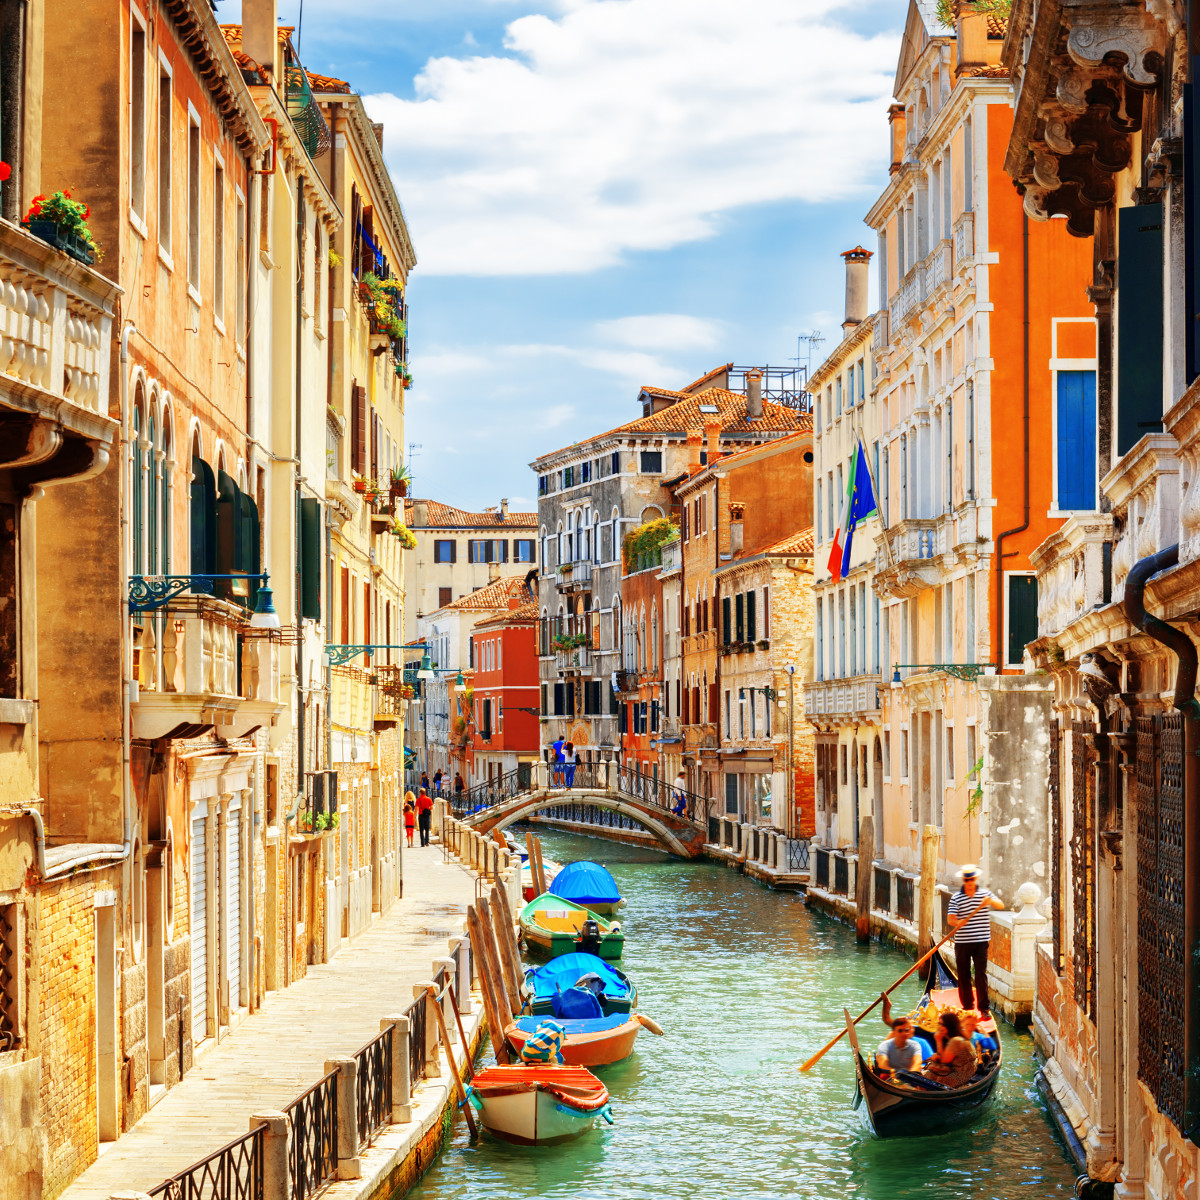 Travel to Venice, Italy